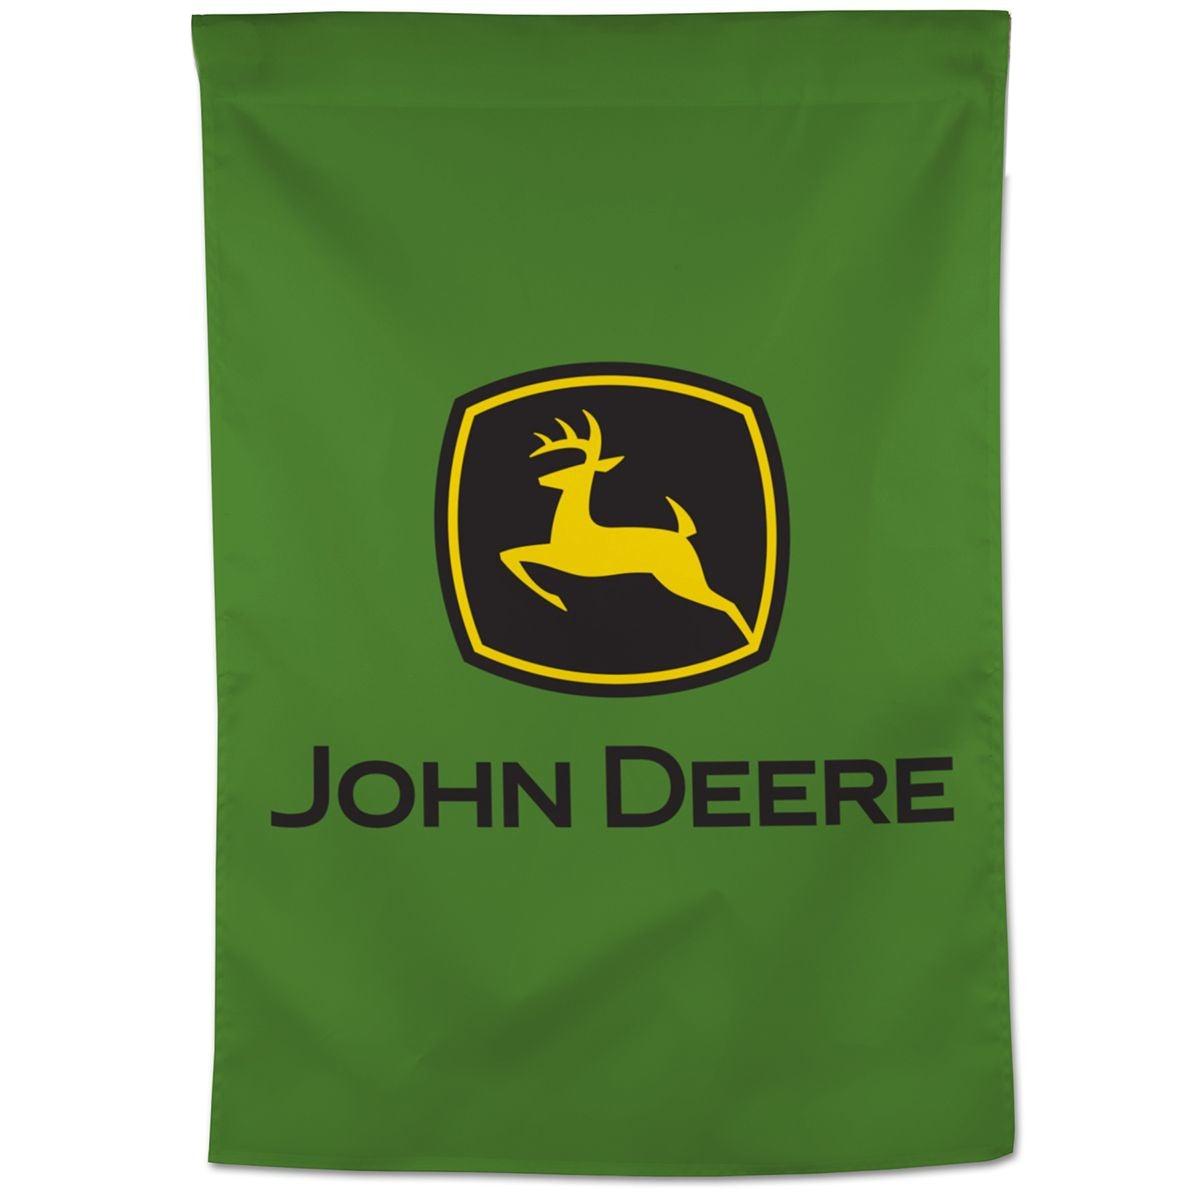 John Deere Green Vertical 28"x40" Banner - LP79700